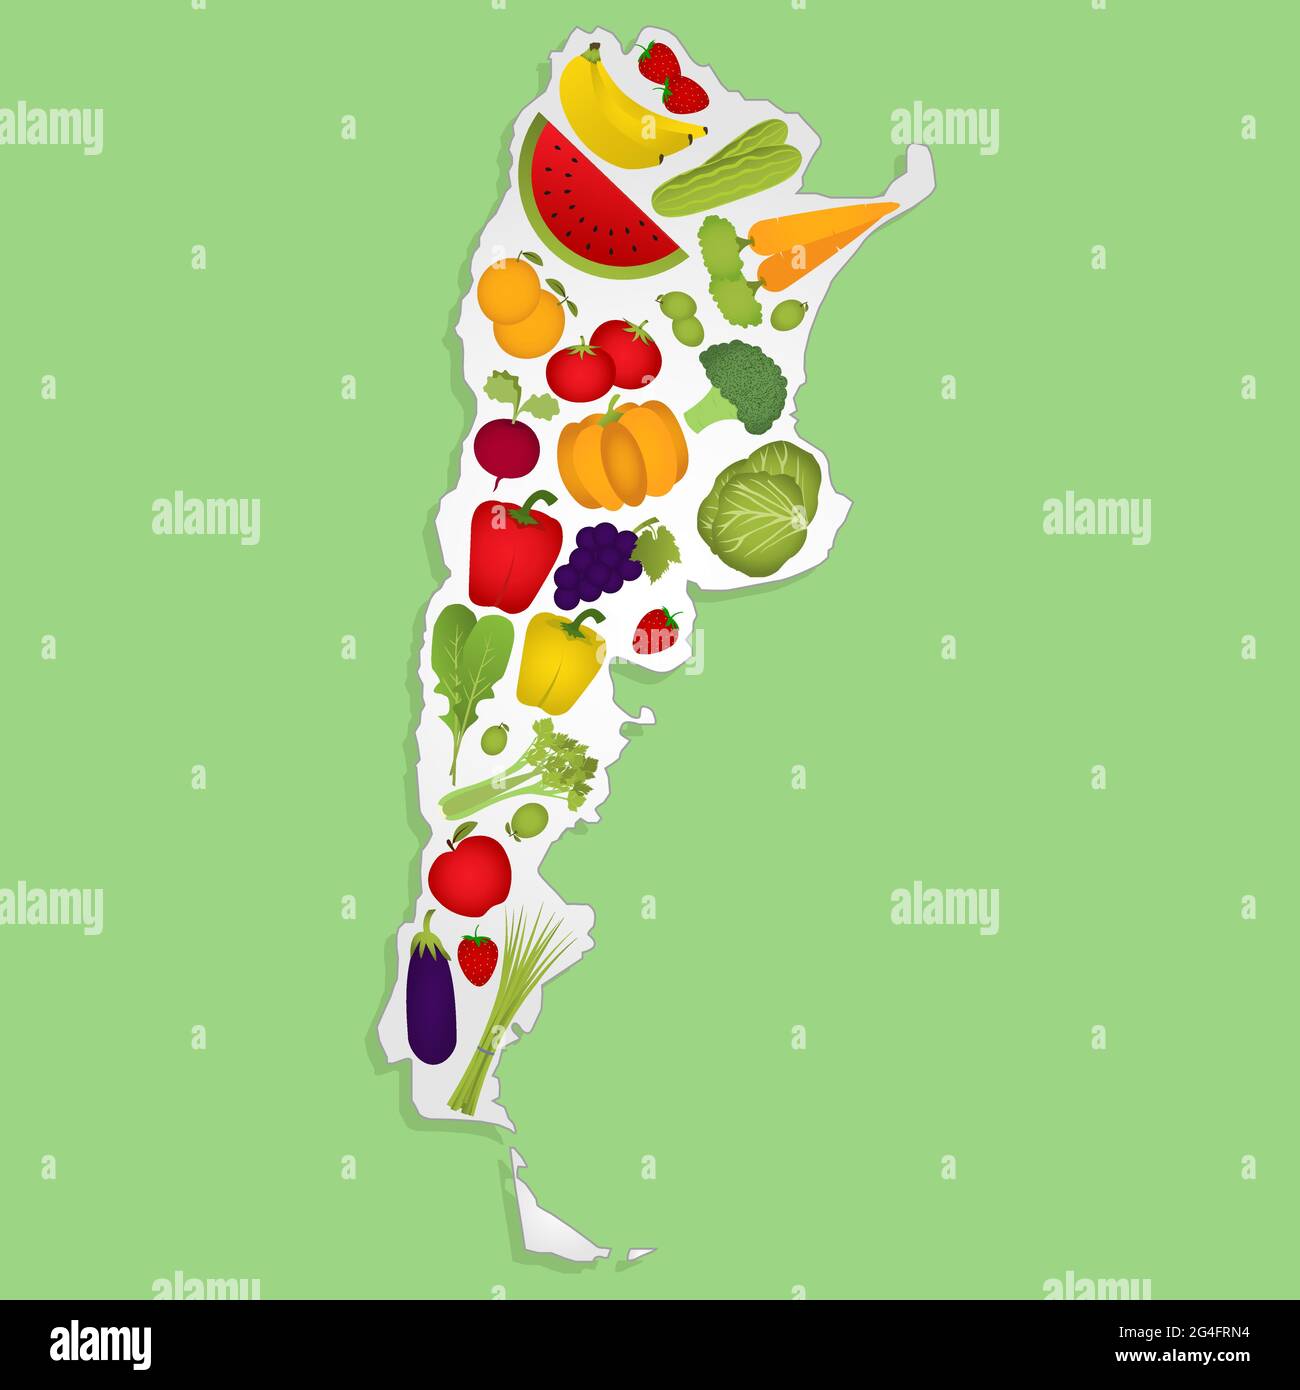 Karte von Argentinien voller Obst und Gemüse (Tomaten, Apfel, Orange, Auberginen, Kohl, Gurke, Brokkoli, Trauben, Rucola, Banane, Paprika, aufgehört Stock Vektor